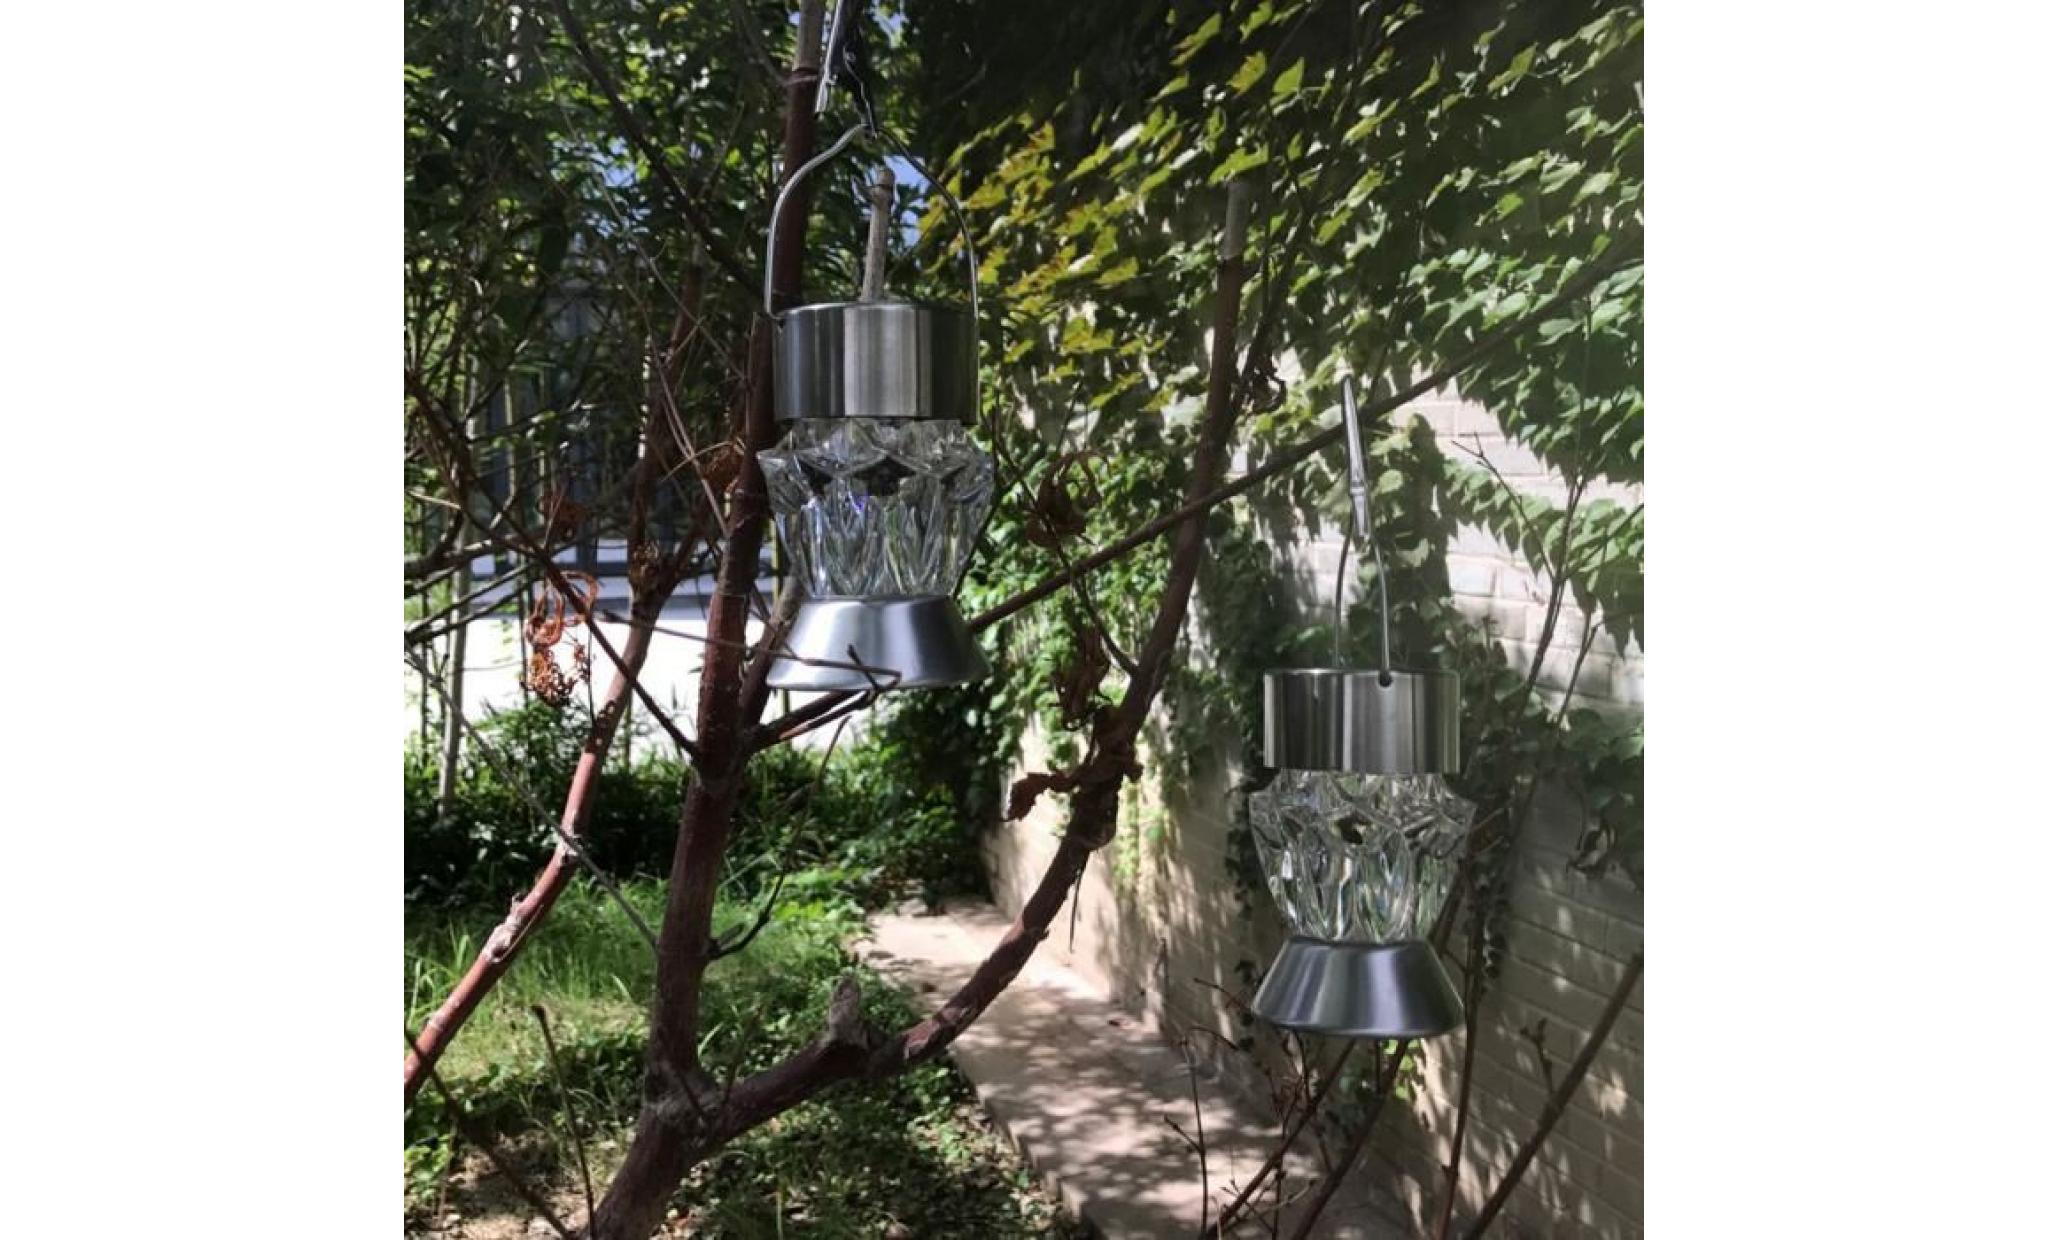 imperméable à l'eau solaire rotatif extérieur jardin camping hanging led diamond light lamp   wtx70918481 pas cher